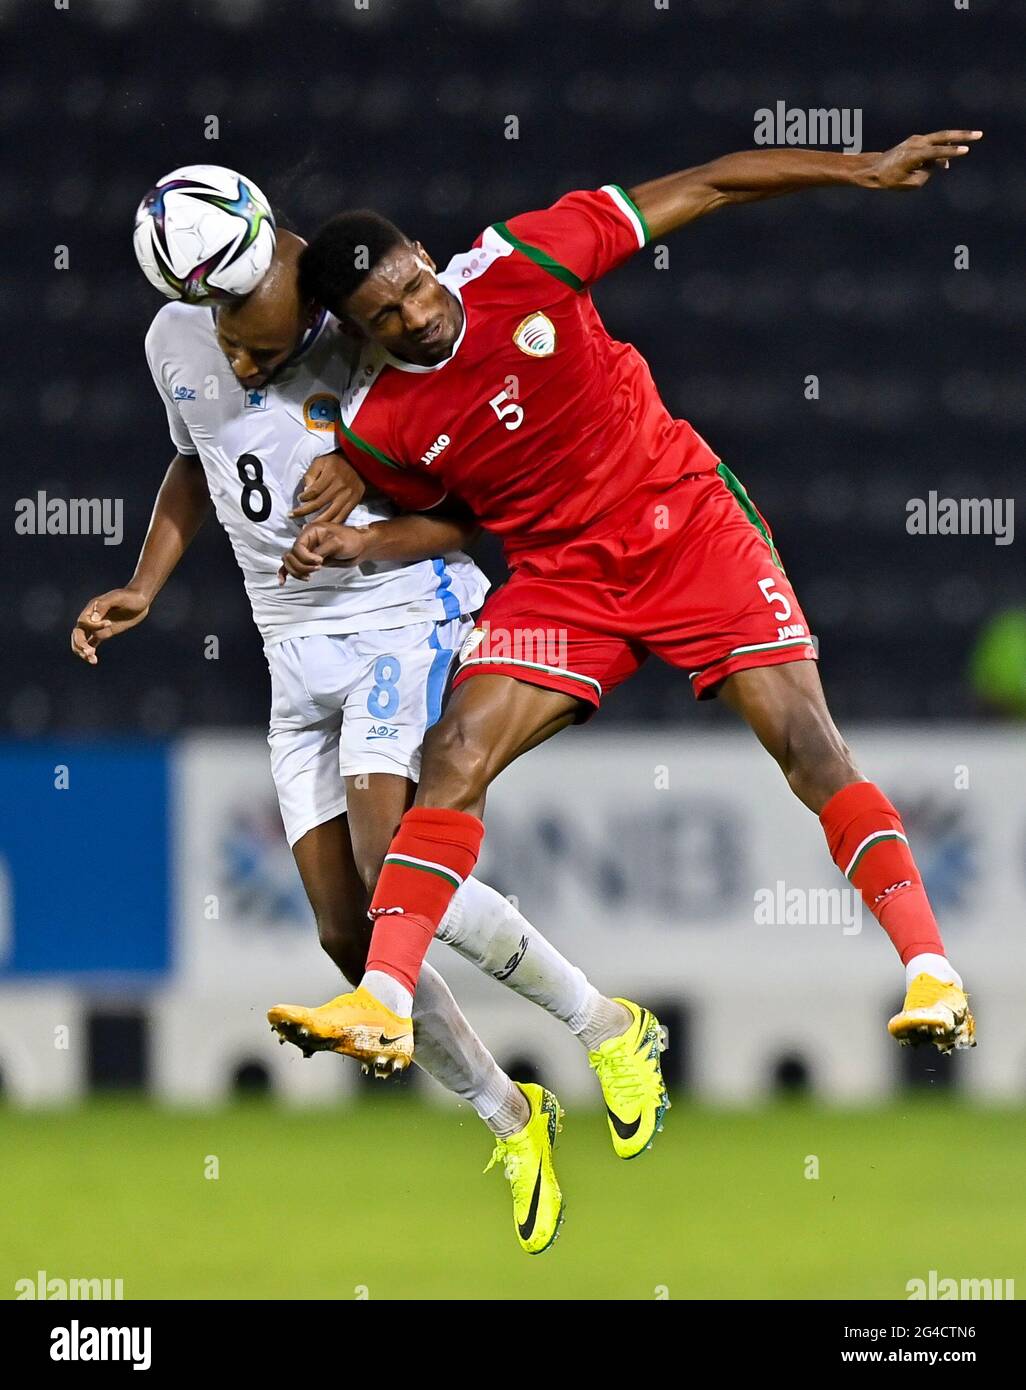 Doha, Katar. Juni 2021. Amjad Al-Harthi (R) aus Oman steht mit Abdulsamed Abdullahi aus Somalia während der FIFA Arab Cup Qatar 2021 Qualifying round Football match zwischen Oman und Somalia in Doha, Katar, 20. Juni 2021. Kredit: Nikku/Xinhua/Alamy Live Nachrichten Stockfoto